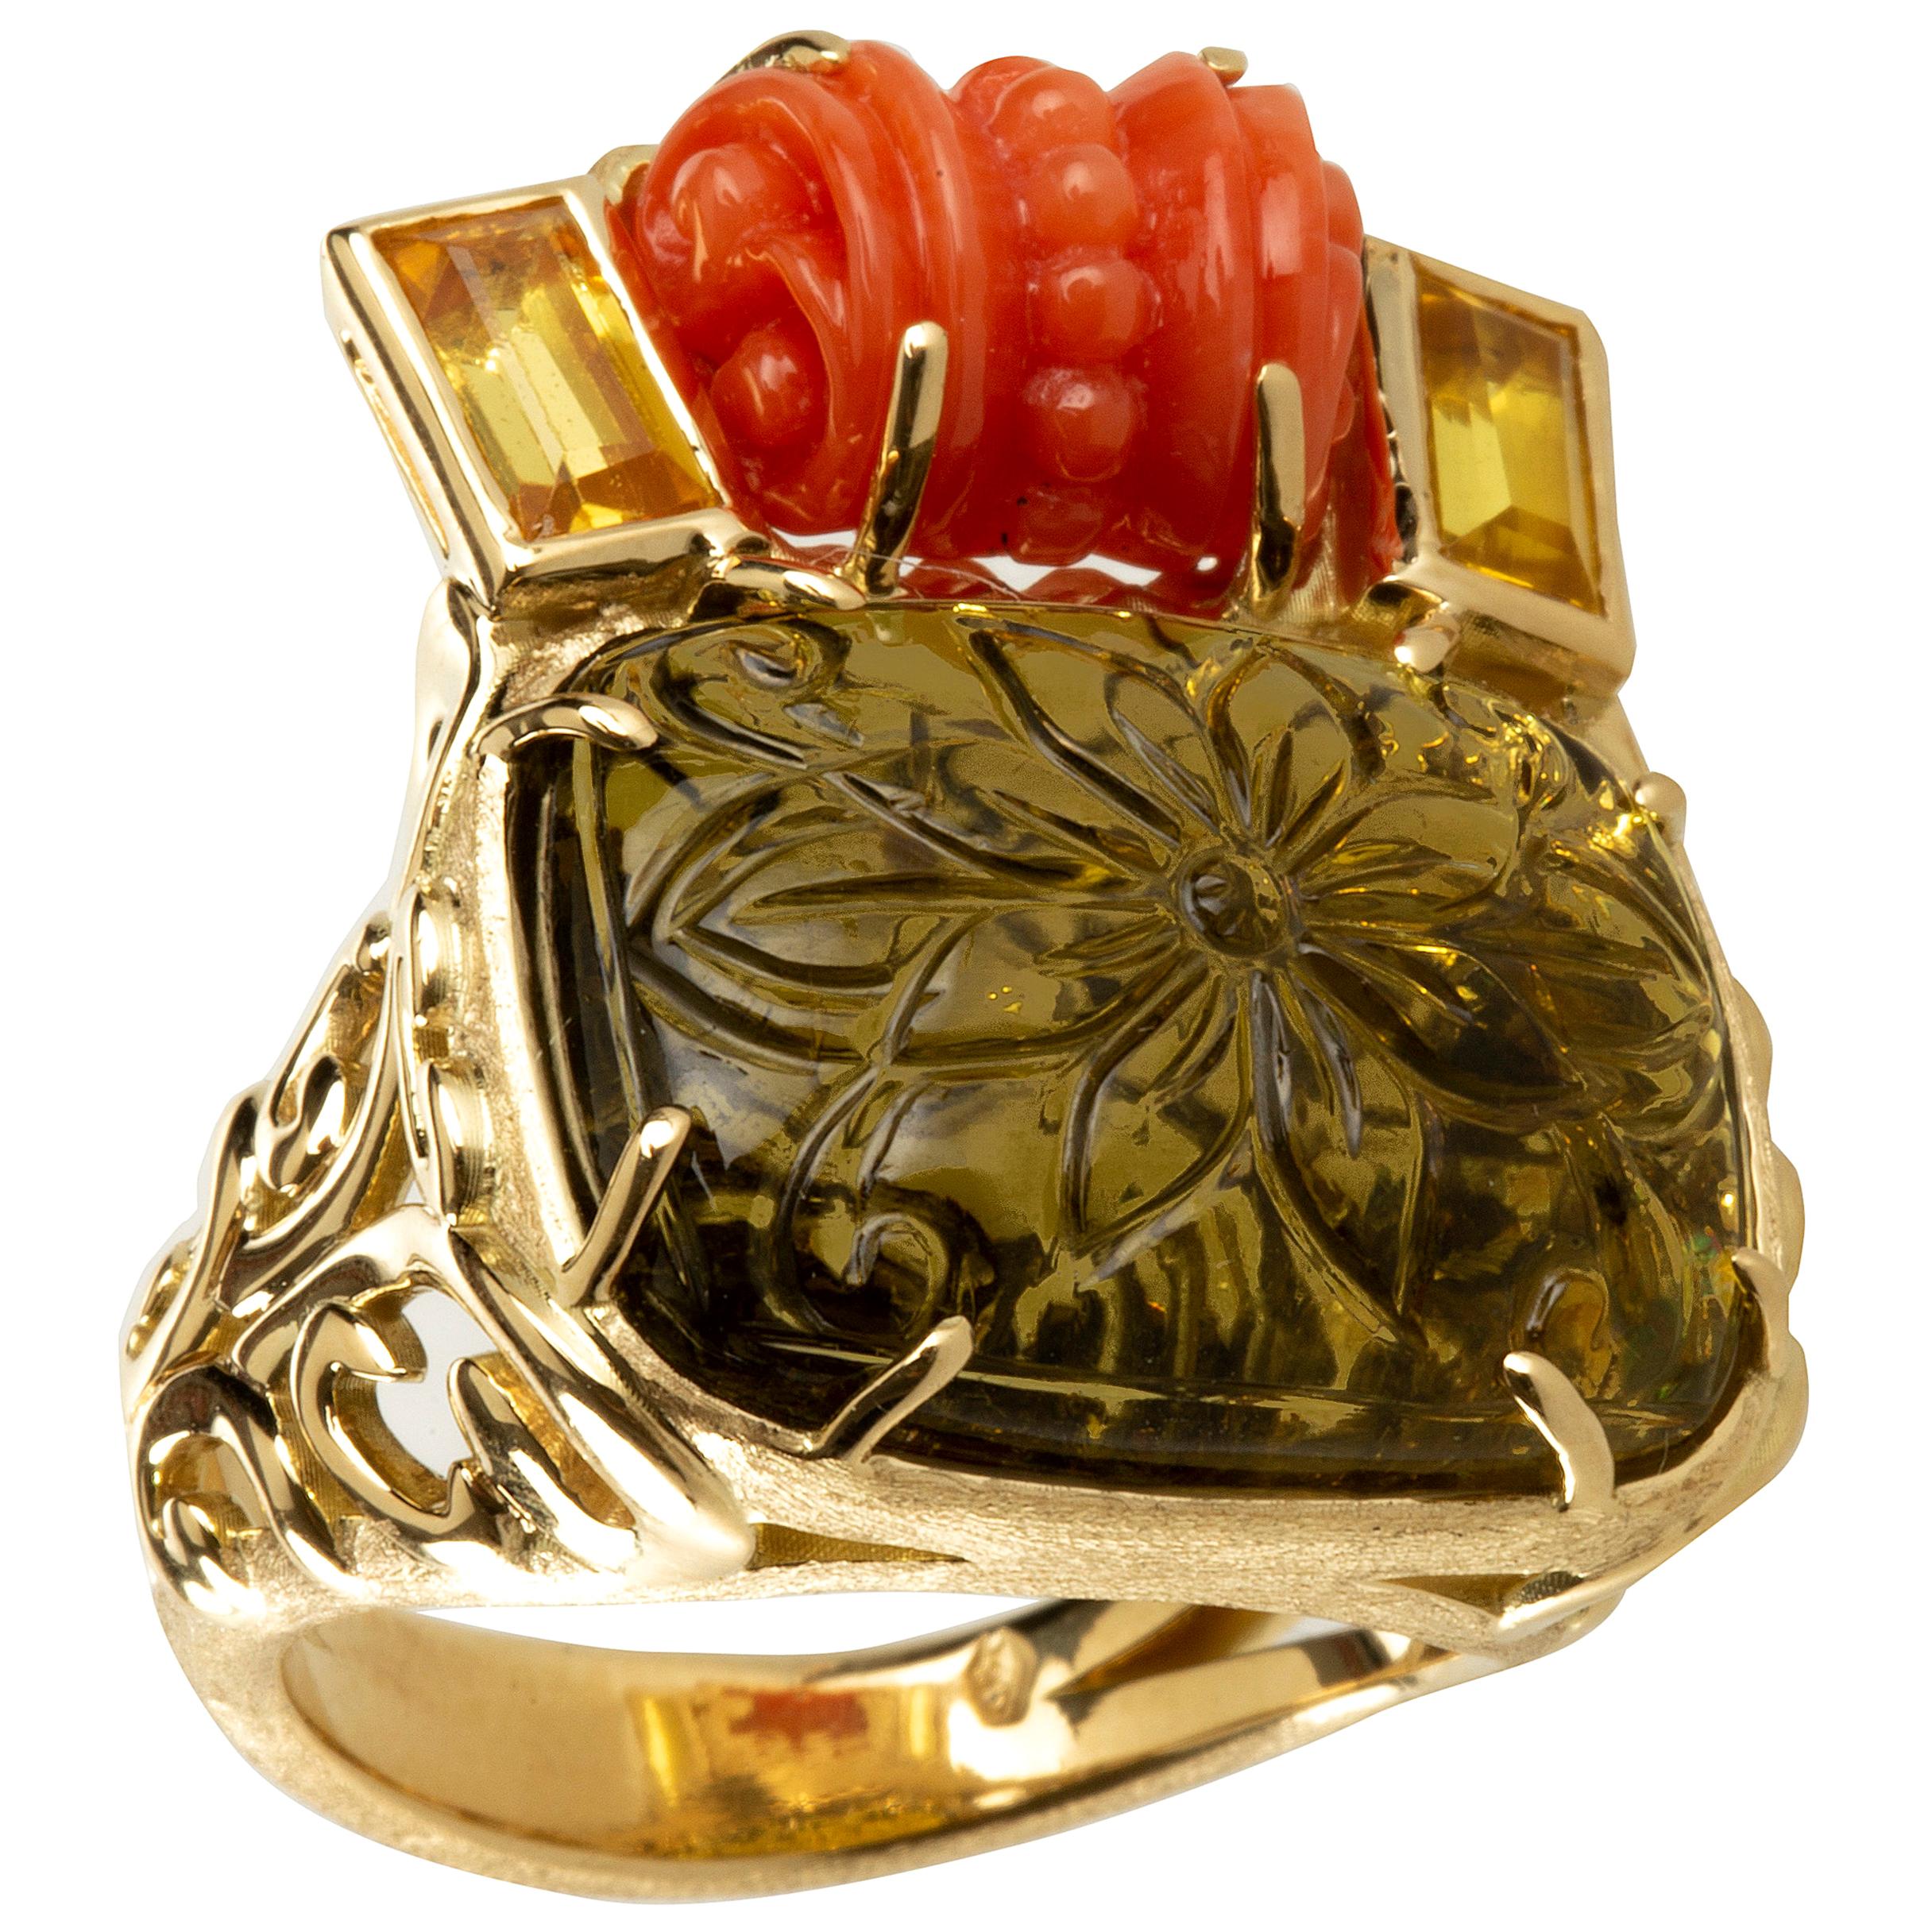 Bague en or 18 carats avec tourmaline sculptée, corail et saphir jaune